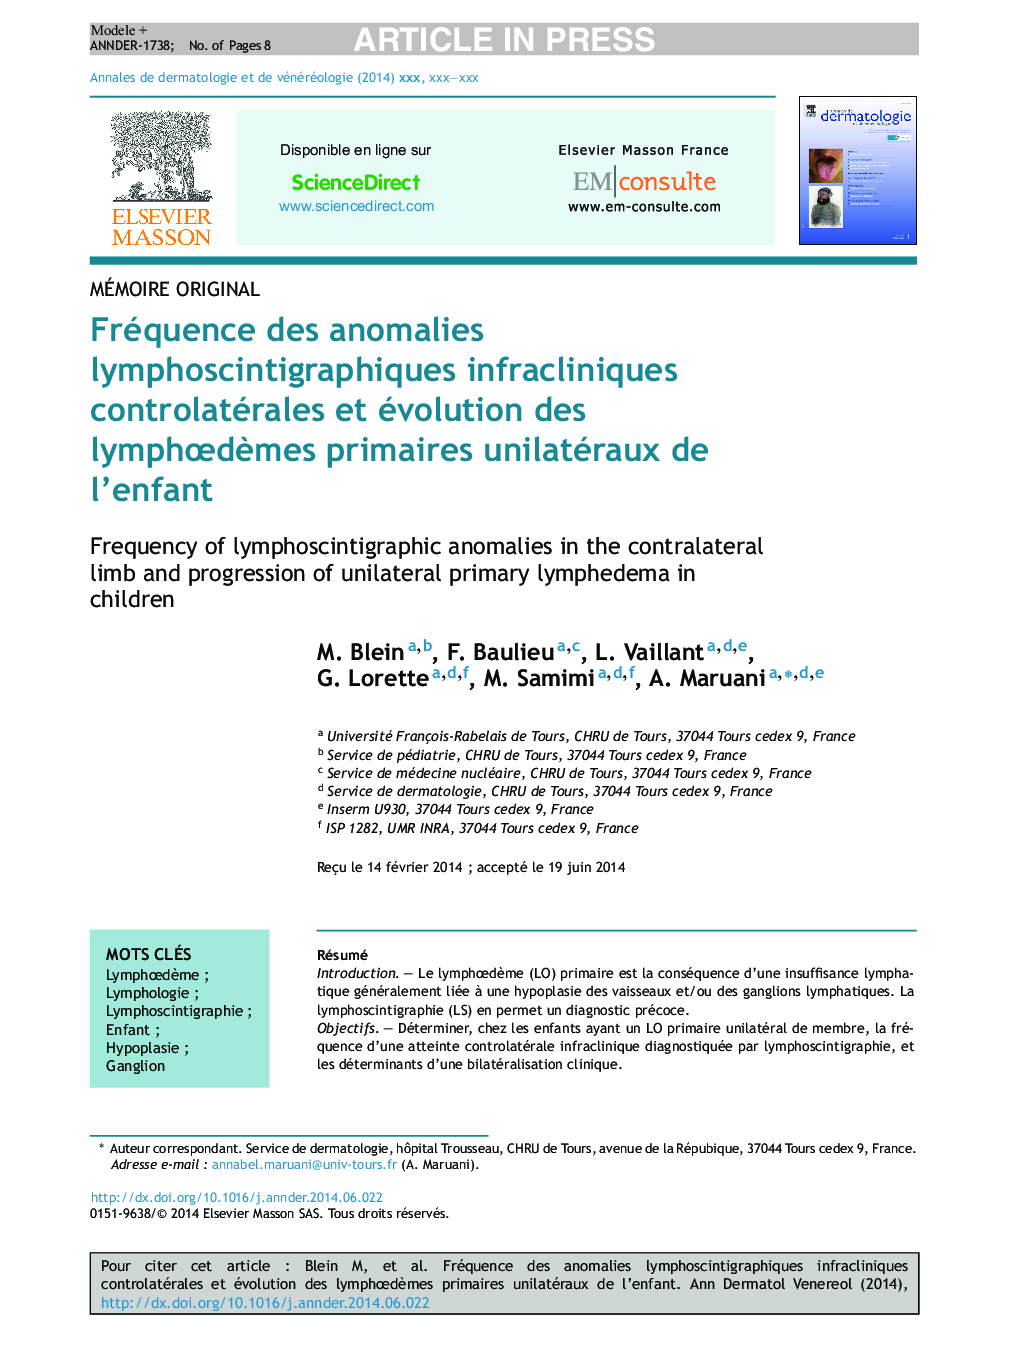 Fréquence des anomalies lymphoscintigraphiques infracliniques controlatérales et évolution des lymphÅdÃ¨mes primaires unilatéraux de l'enfant